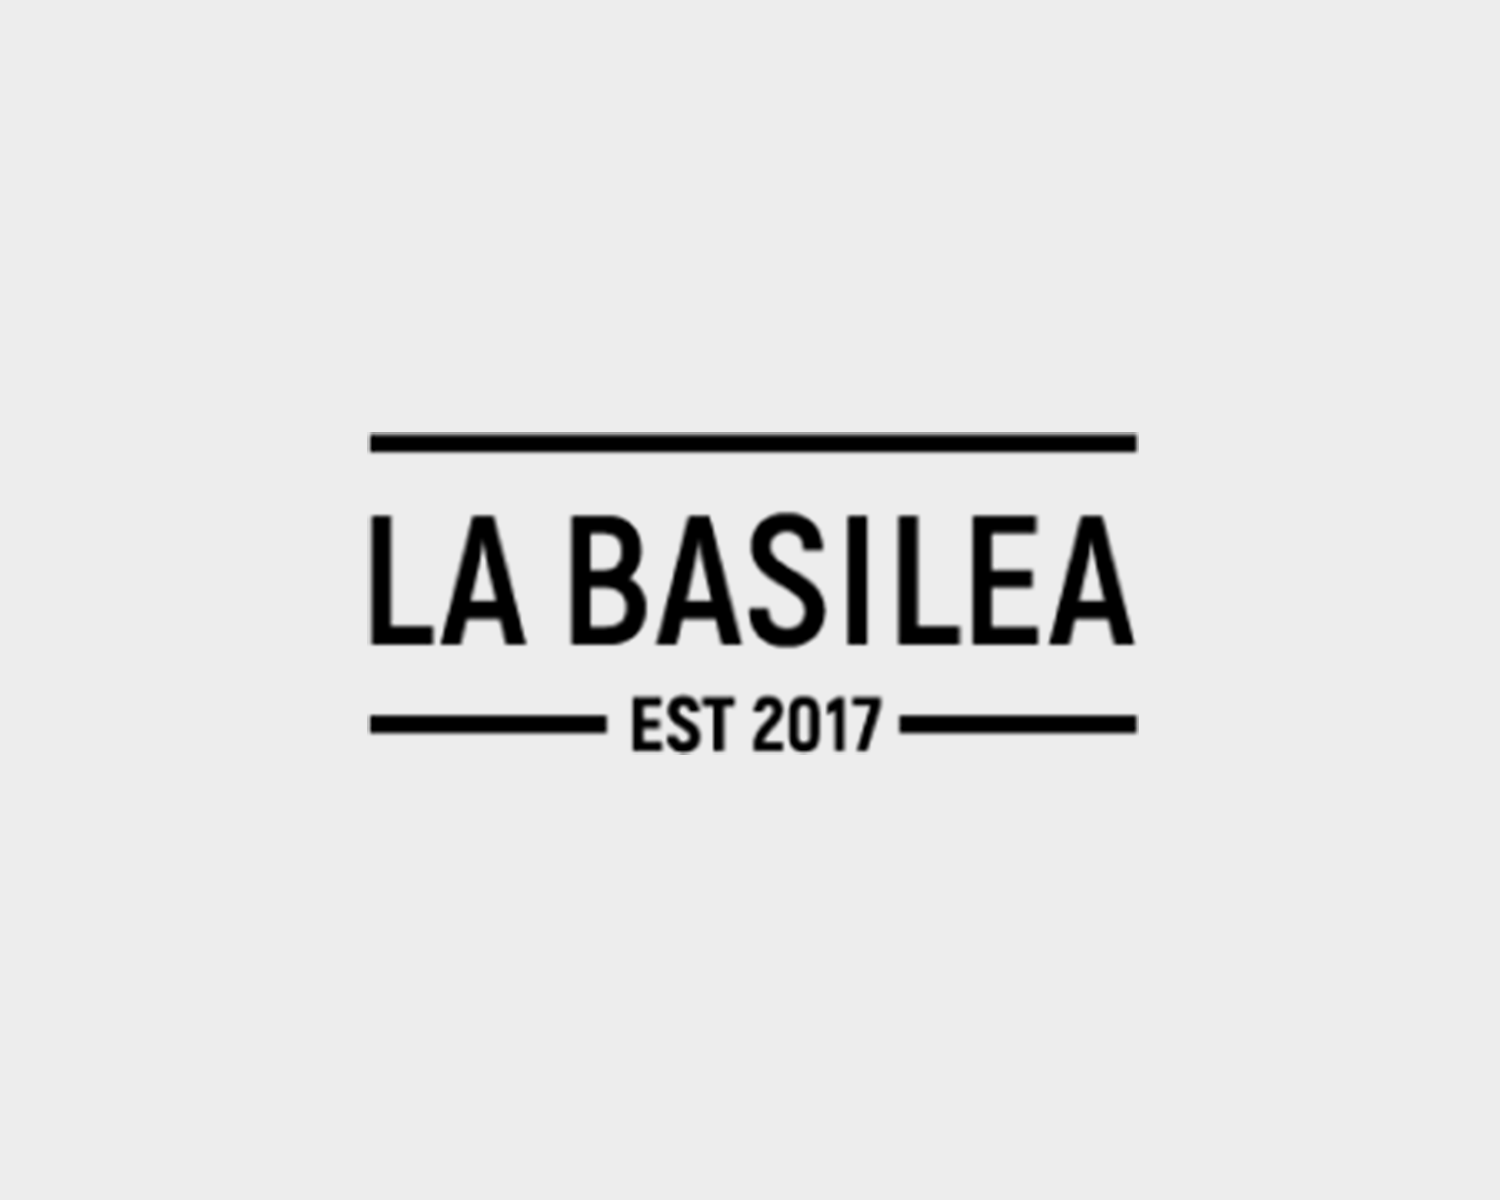 La Basilea